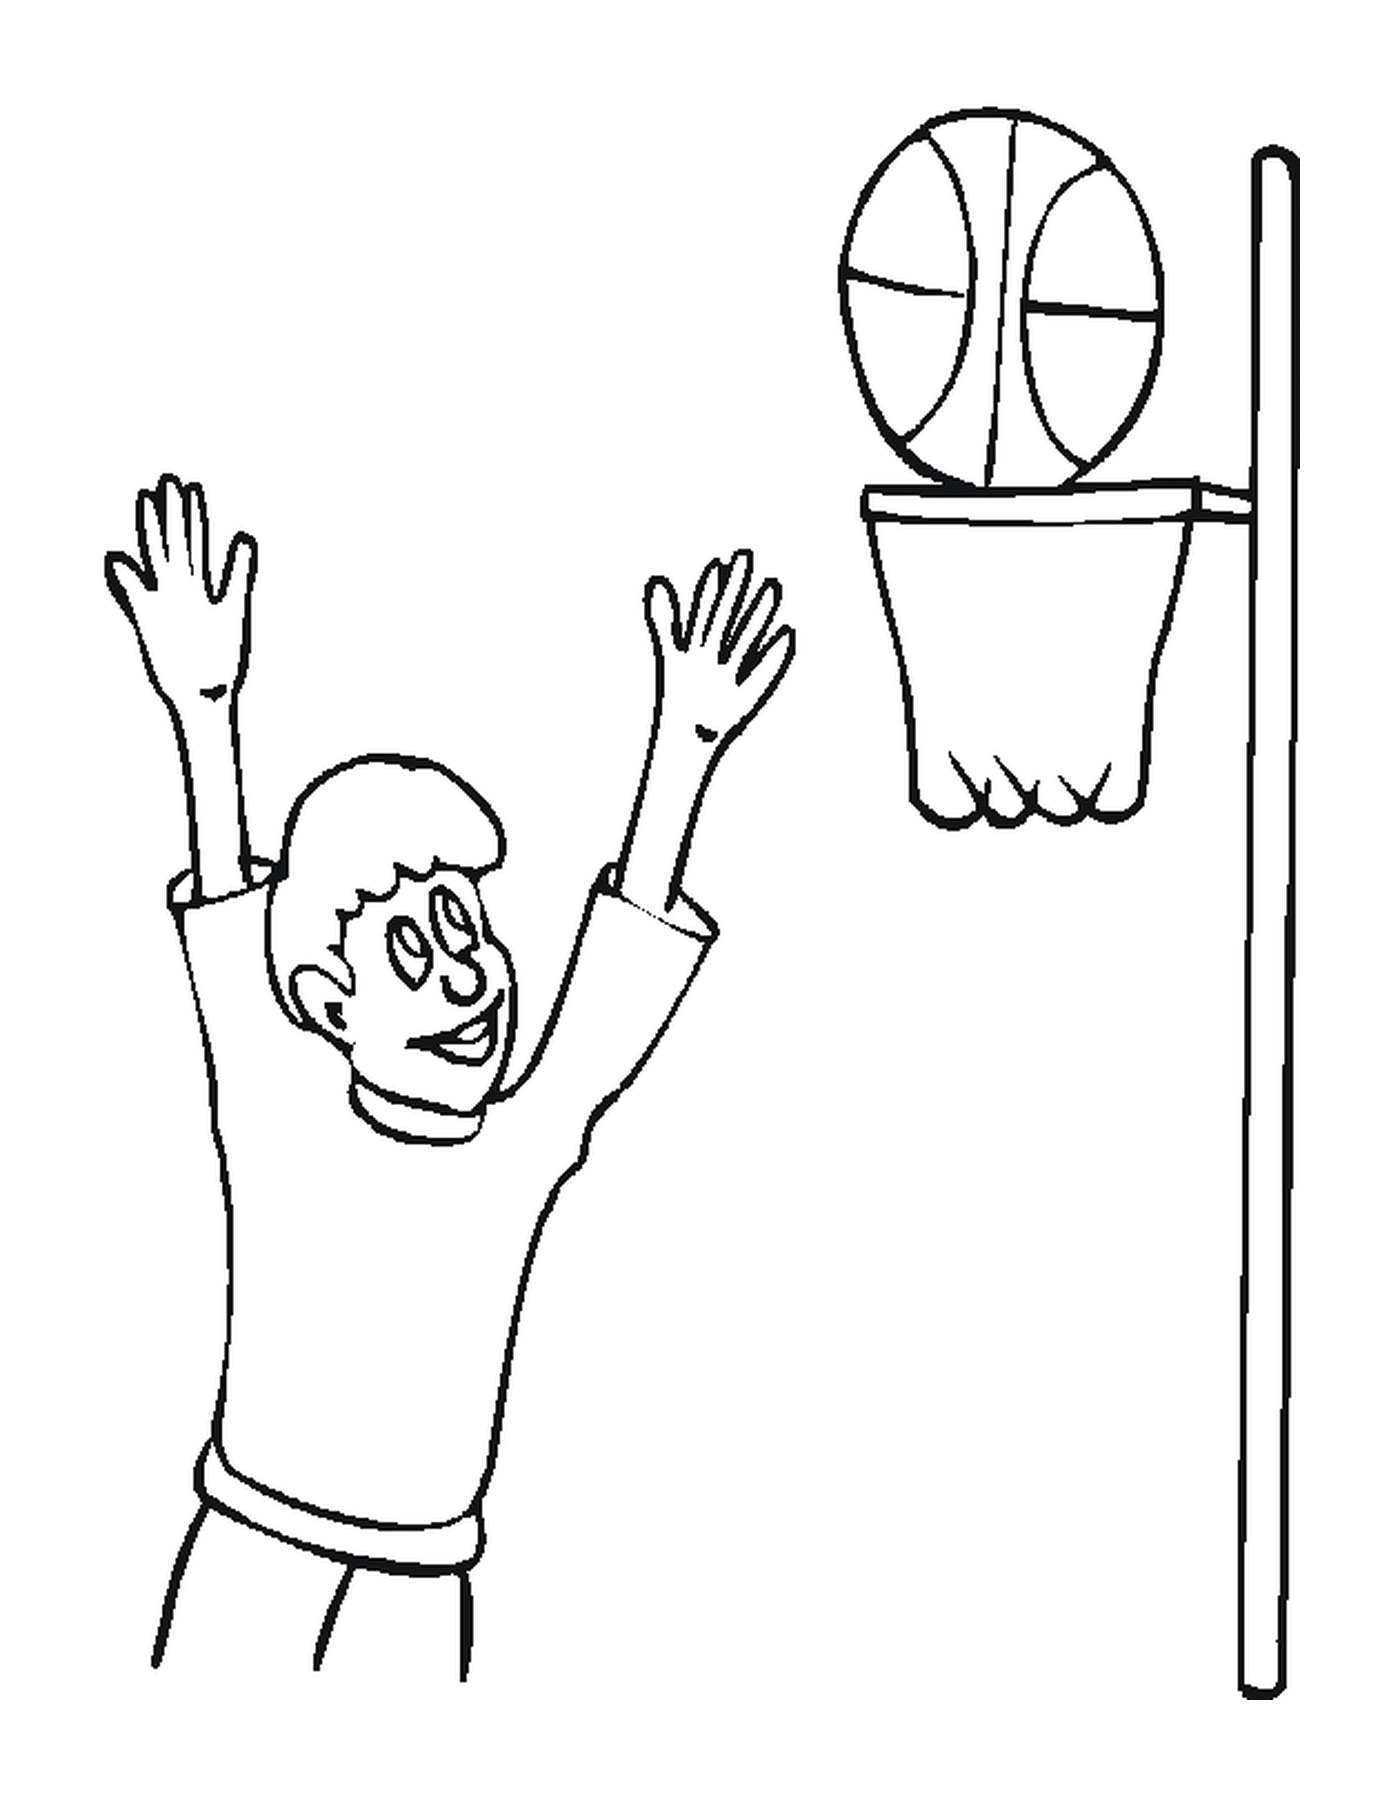   Un joueur de basketball joue dans une salle 